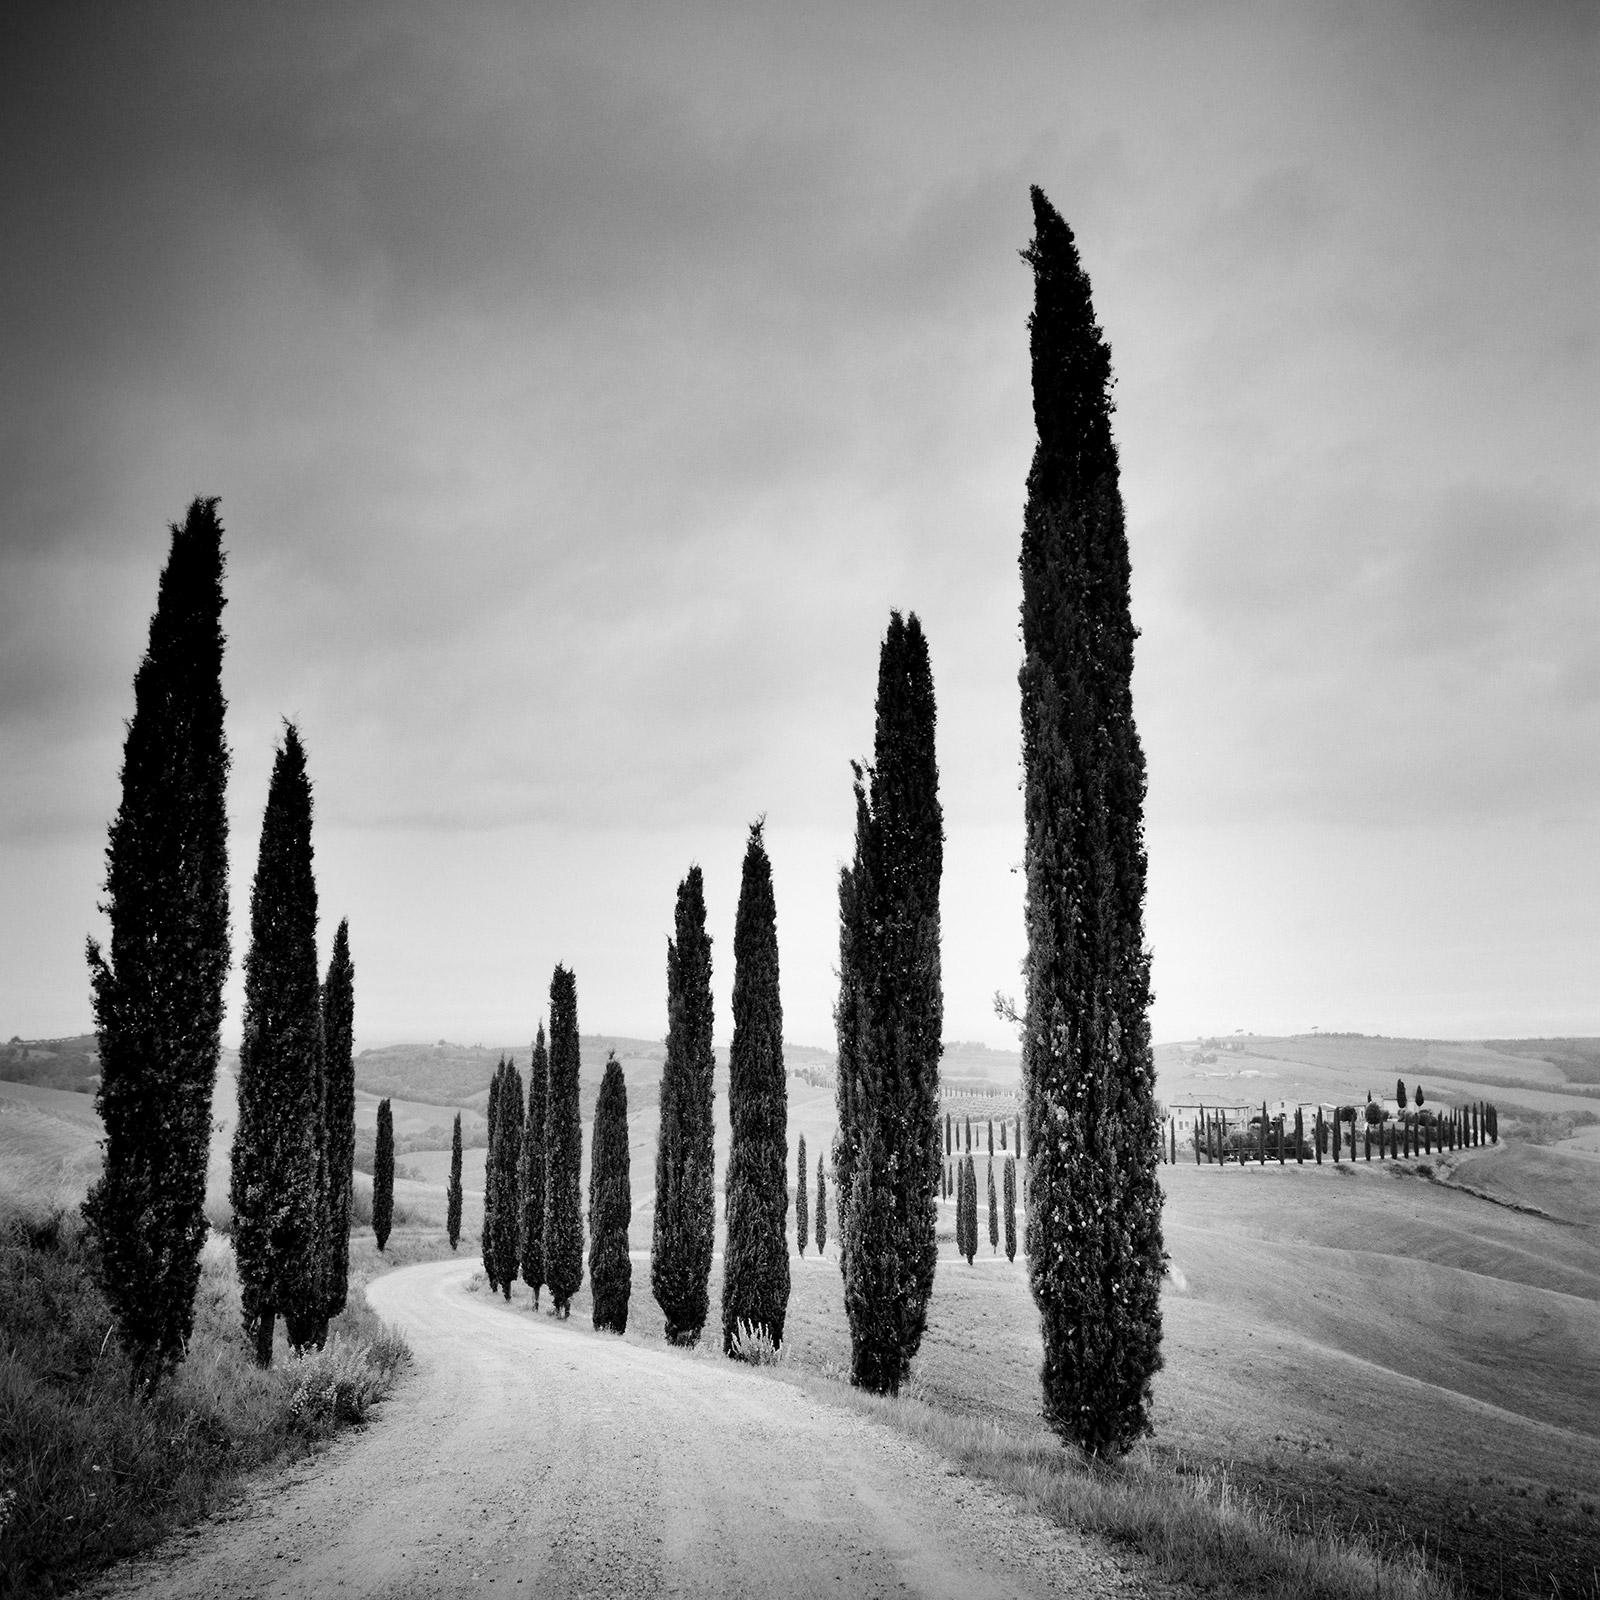 Zypressenbäume entlang der Straße, Toskana, Schwarz-Weiß-Fotografie, Landschaft